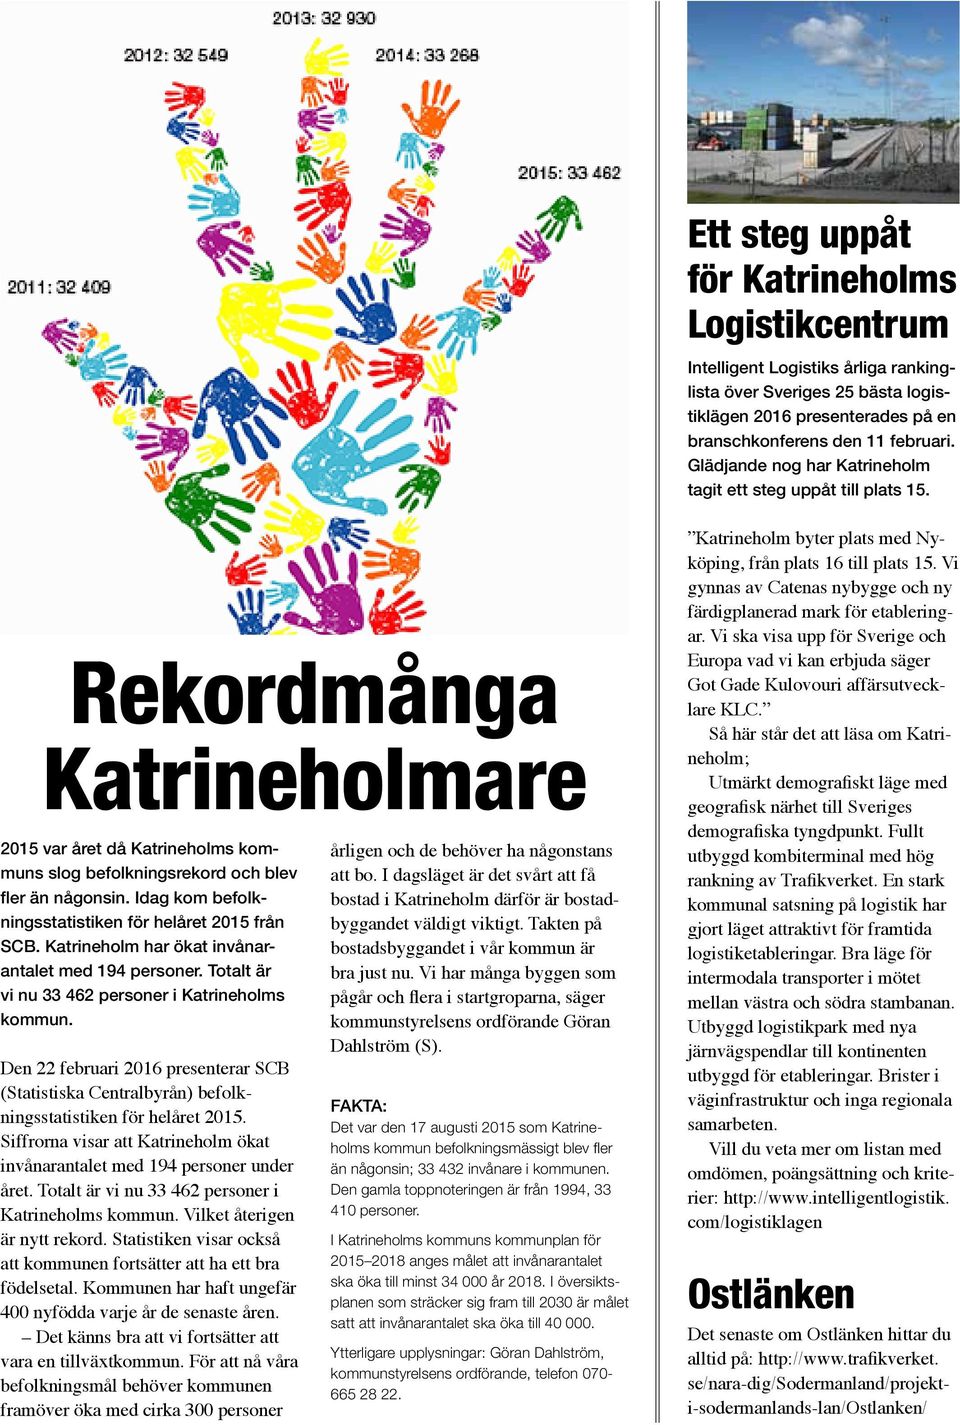 Idag kom befolkningsstatistiken för helåret 2015 från SCB. Katrineholm har ökat invånarantalet med 194 personer. Totalt är vi nu 33 462 personer i Katrineholms kommun.